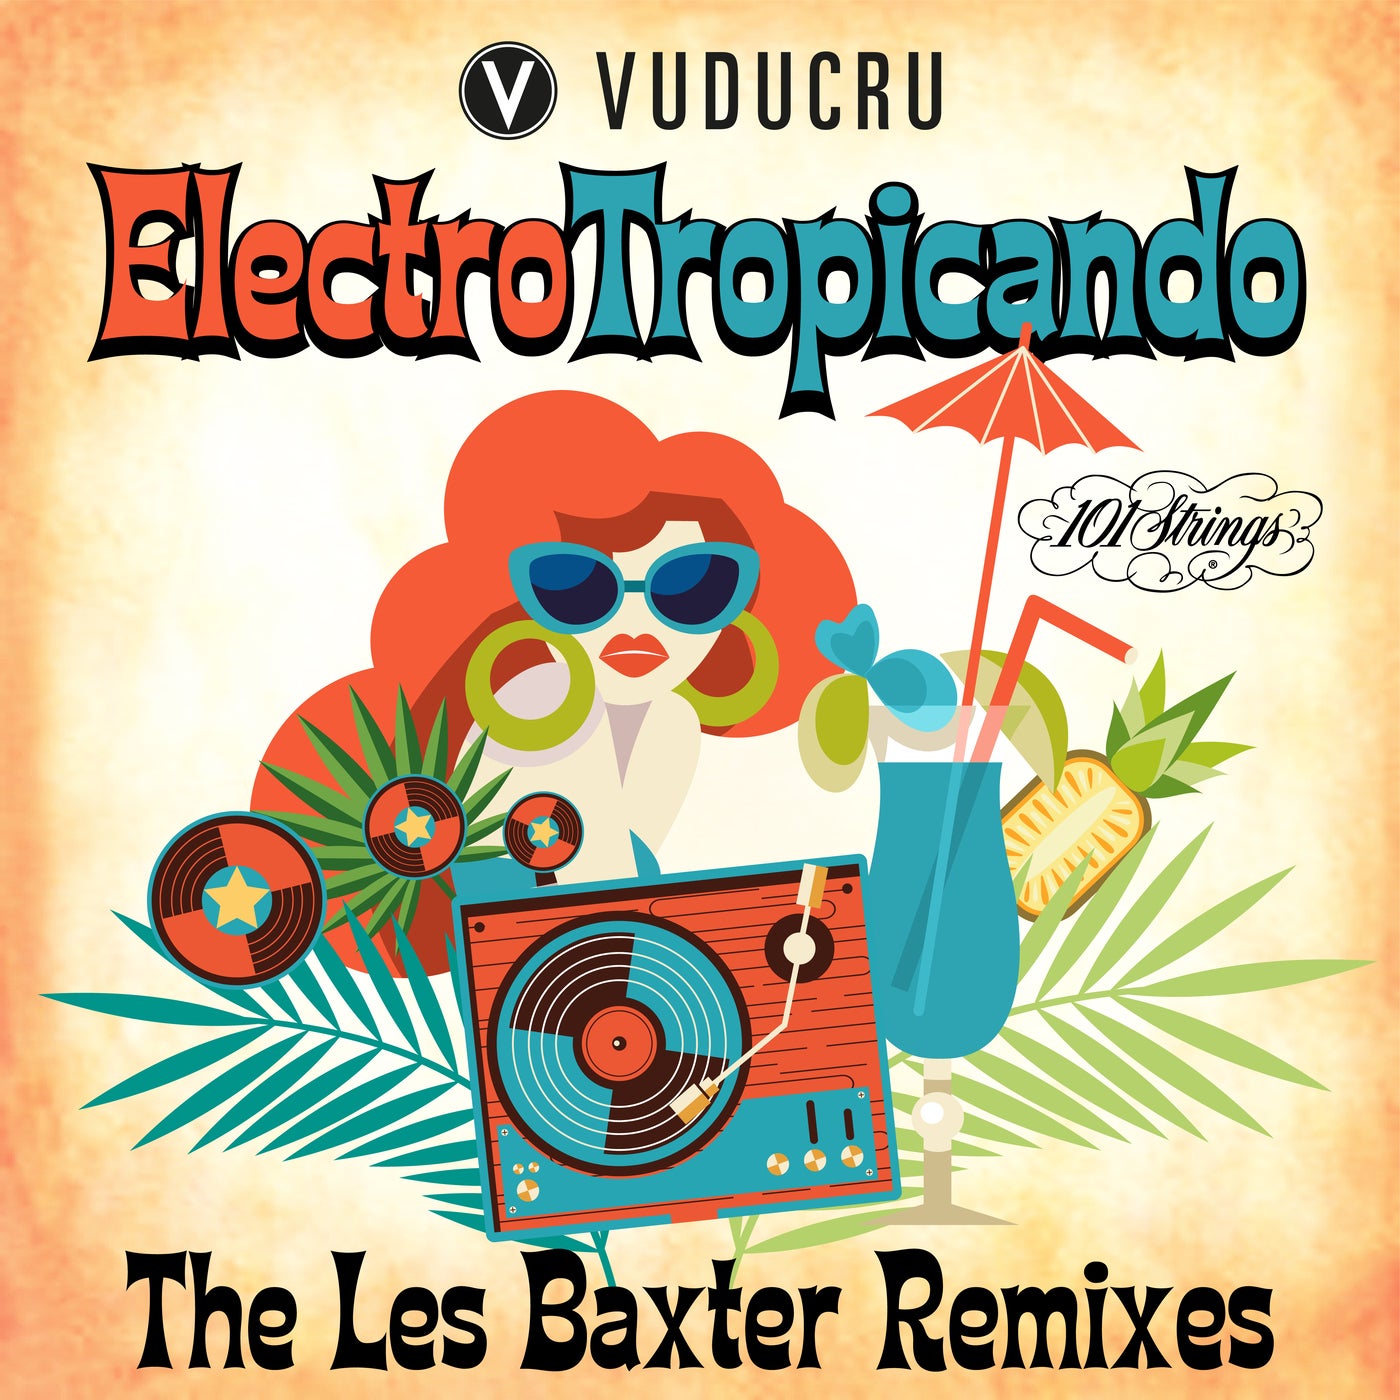 Electro Tropicando: The Les Baxter Remixes